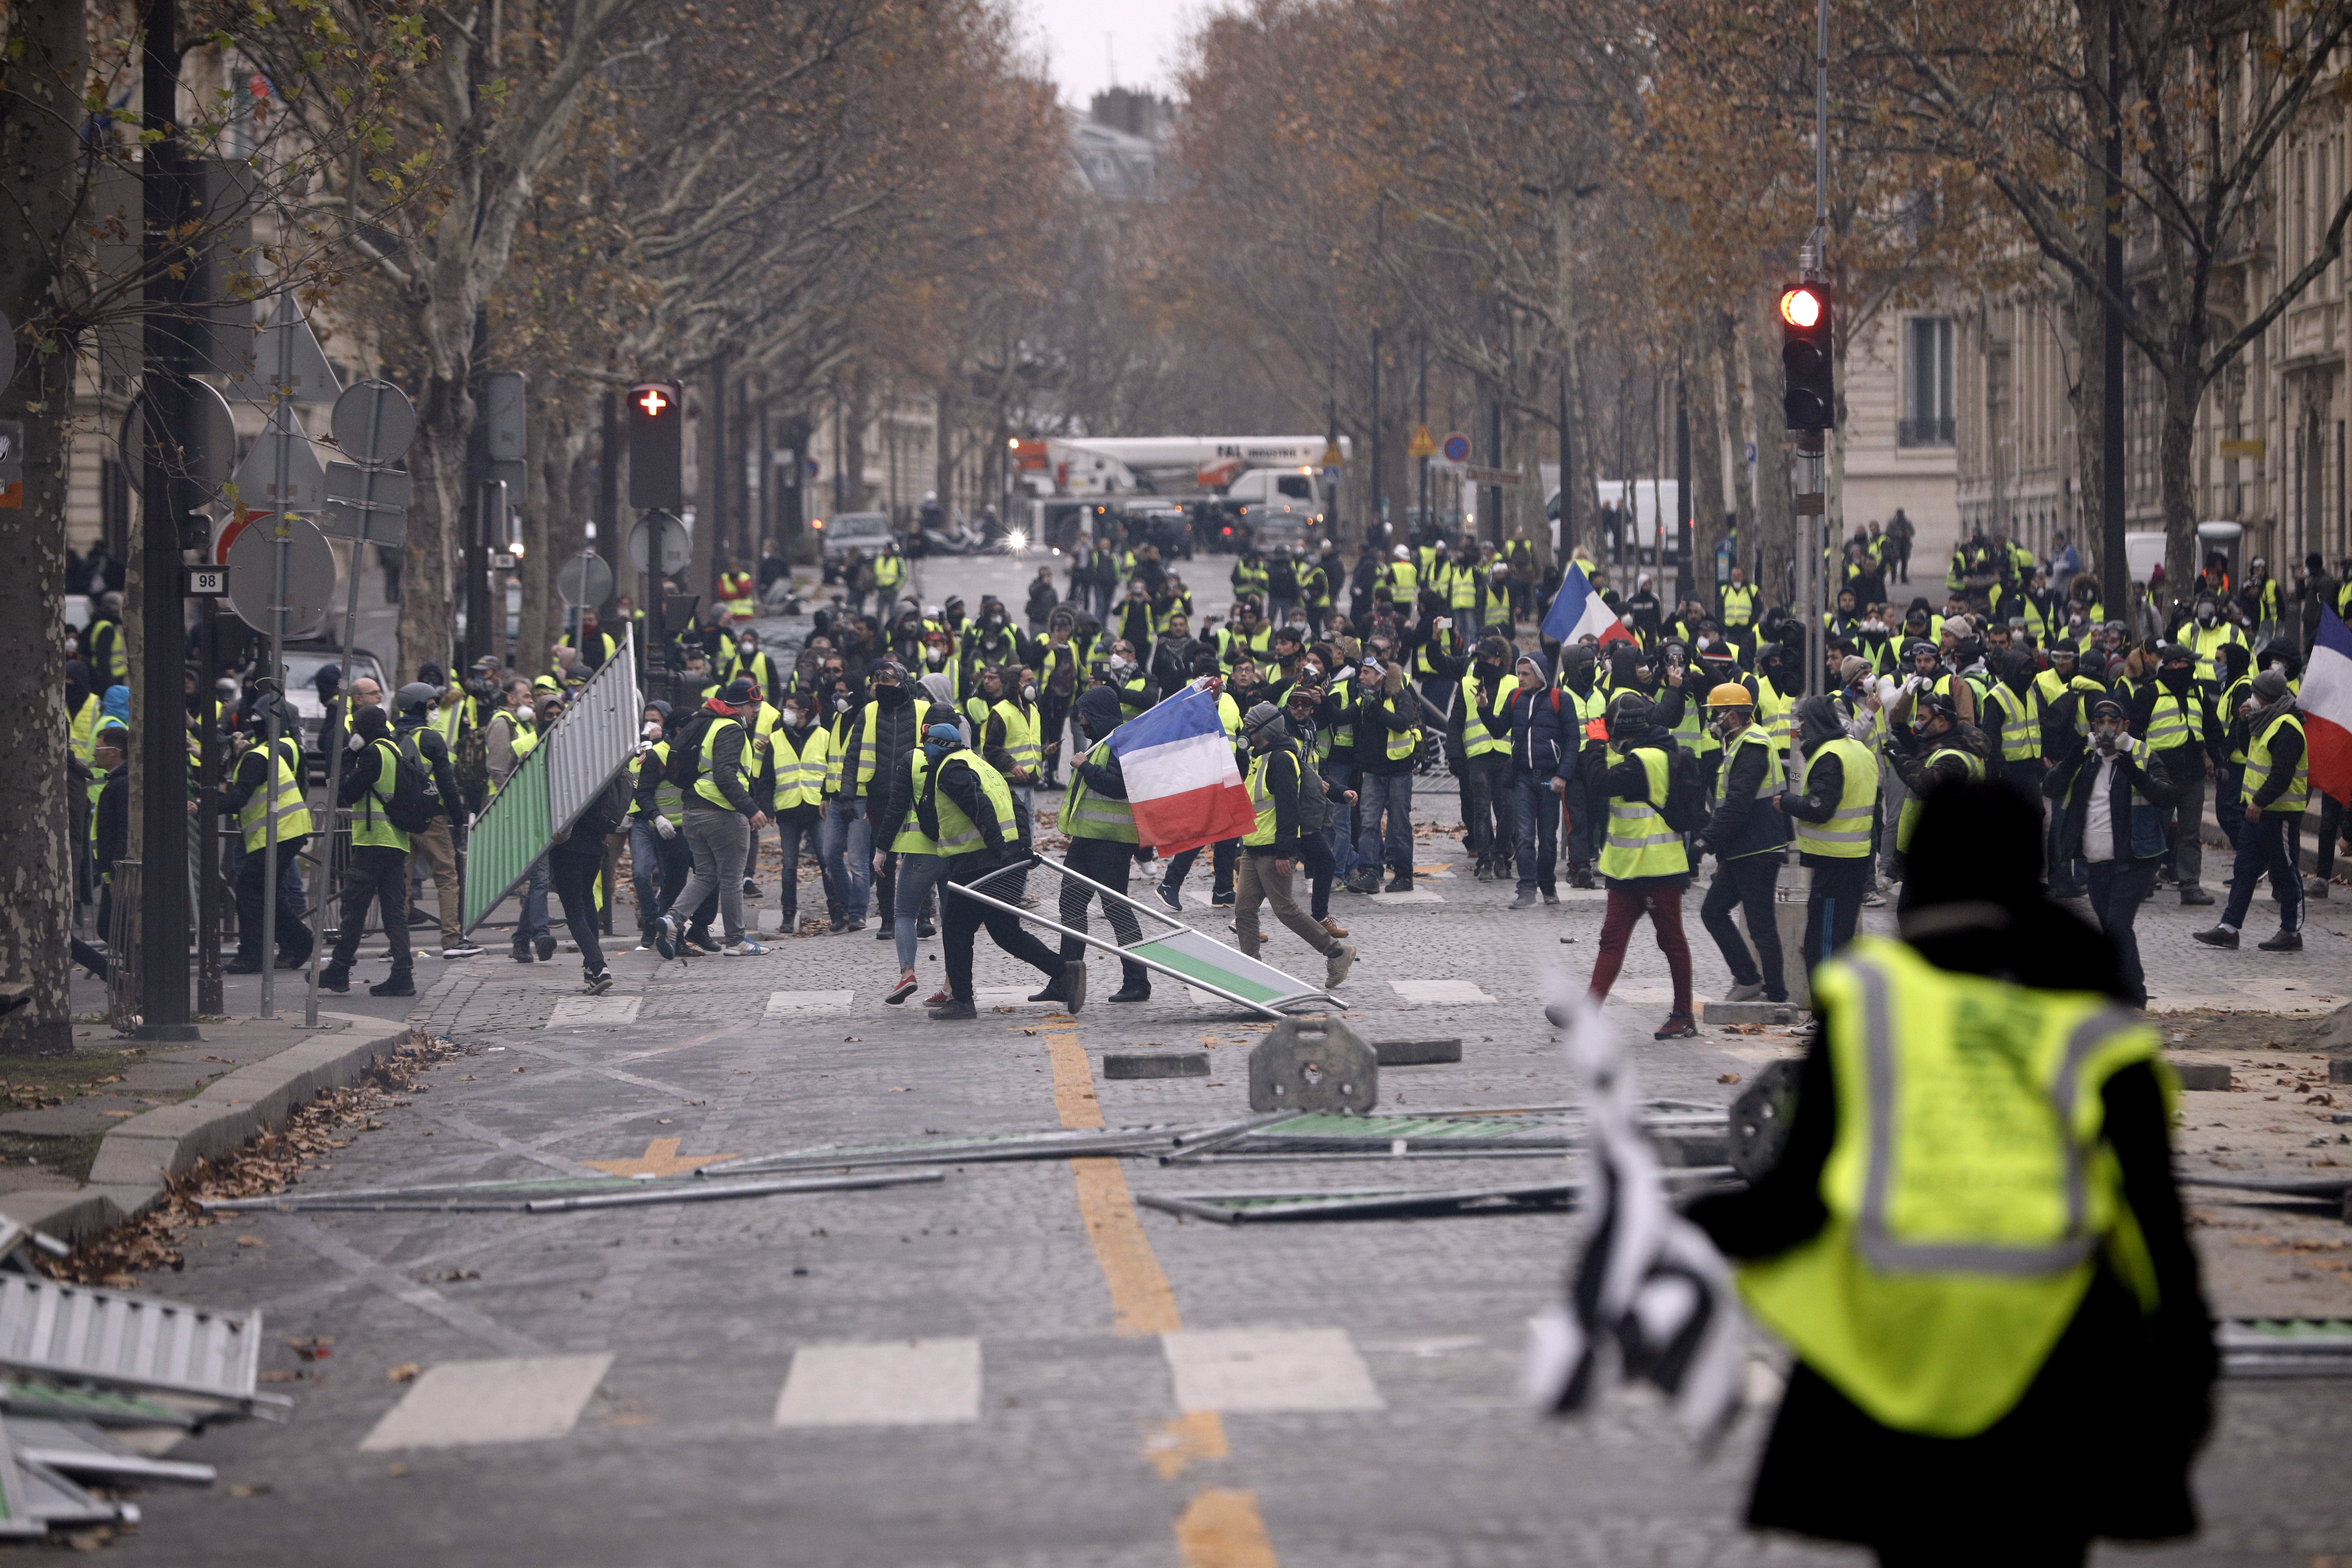 Hundreds arrested after Paris protest riot | HeraldScotland